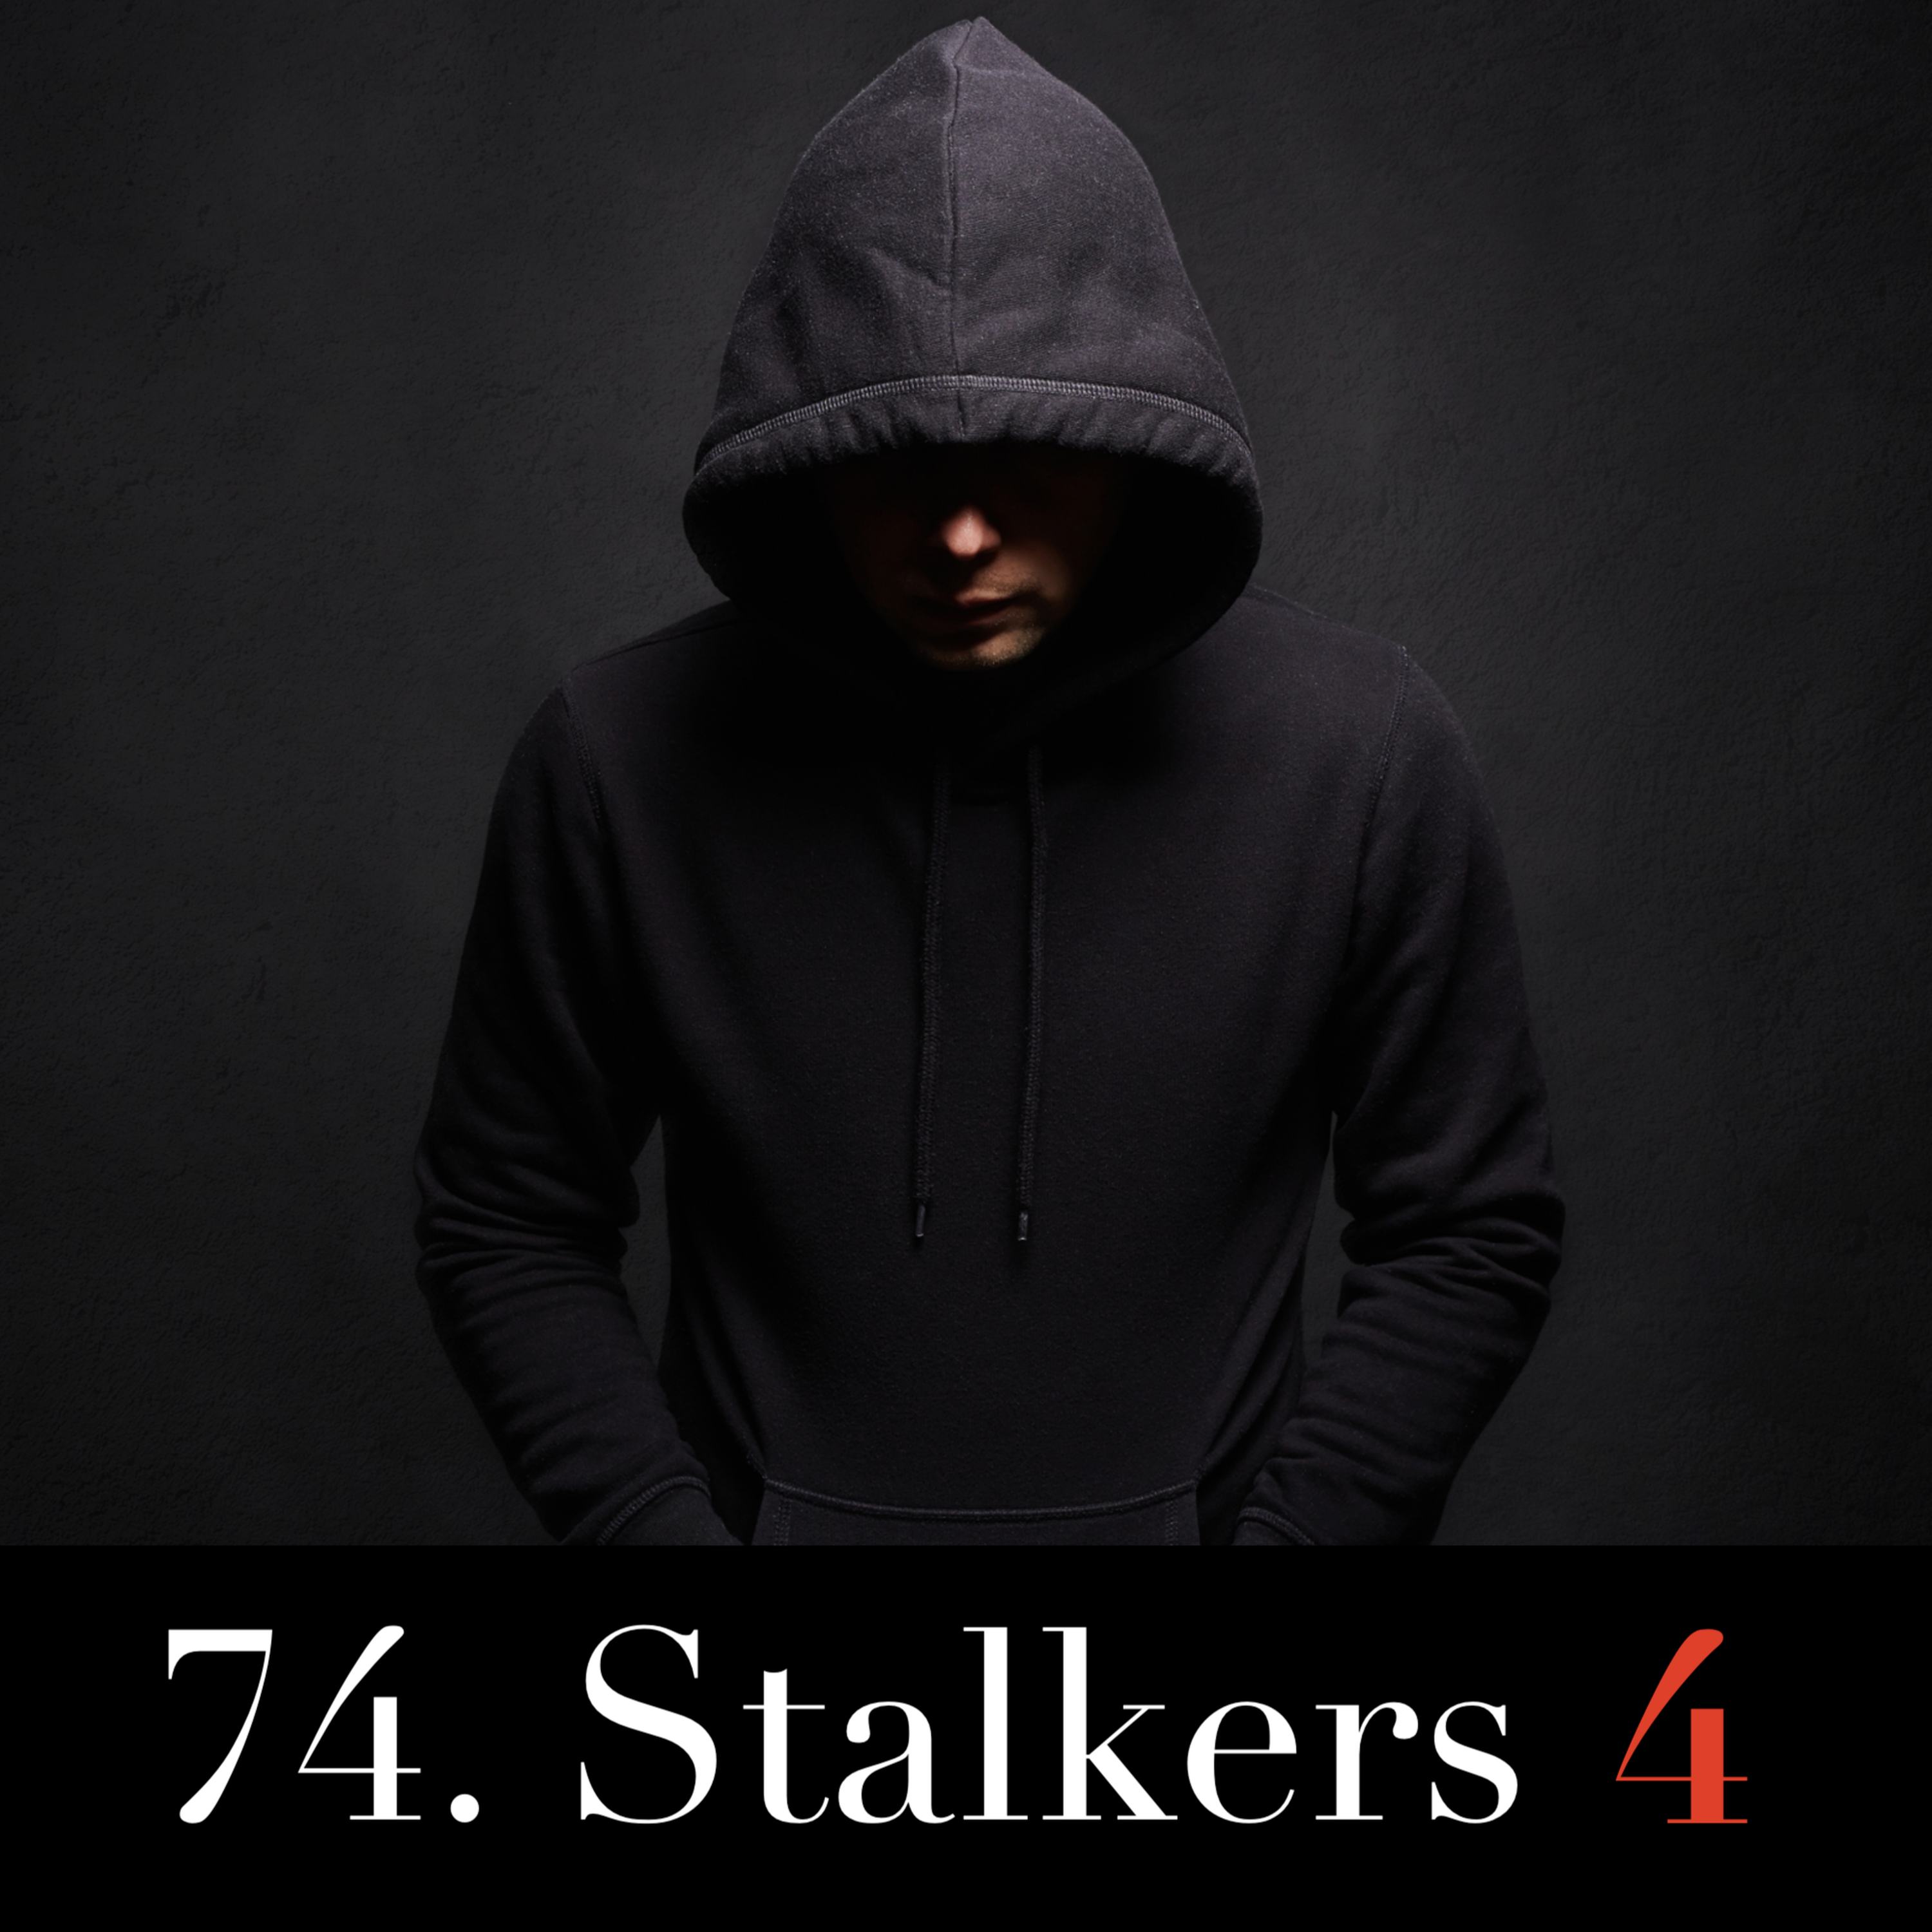 74. Stalkers 4